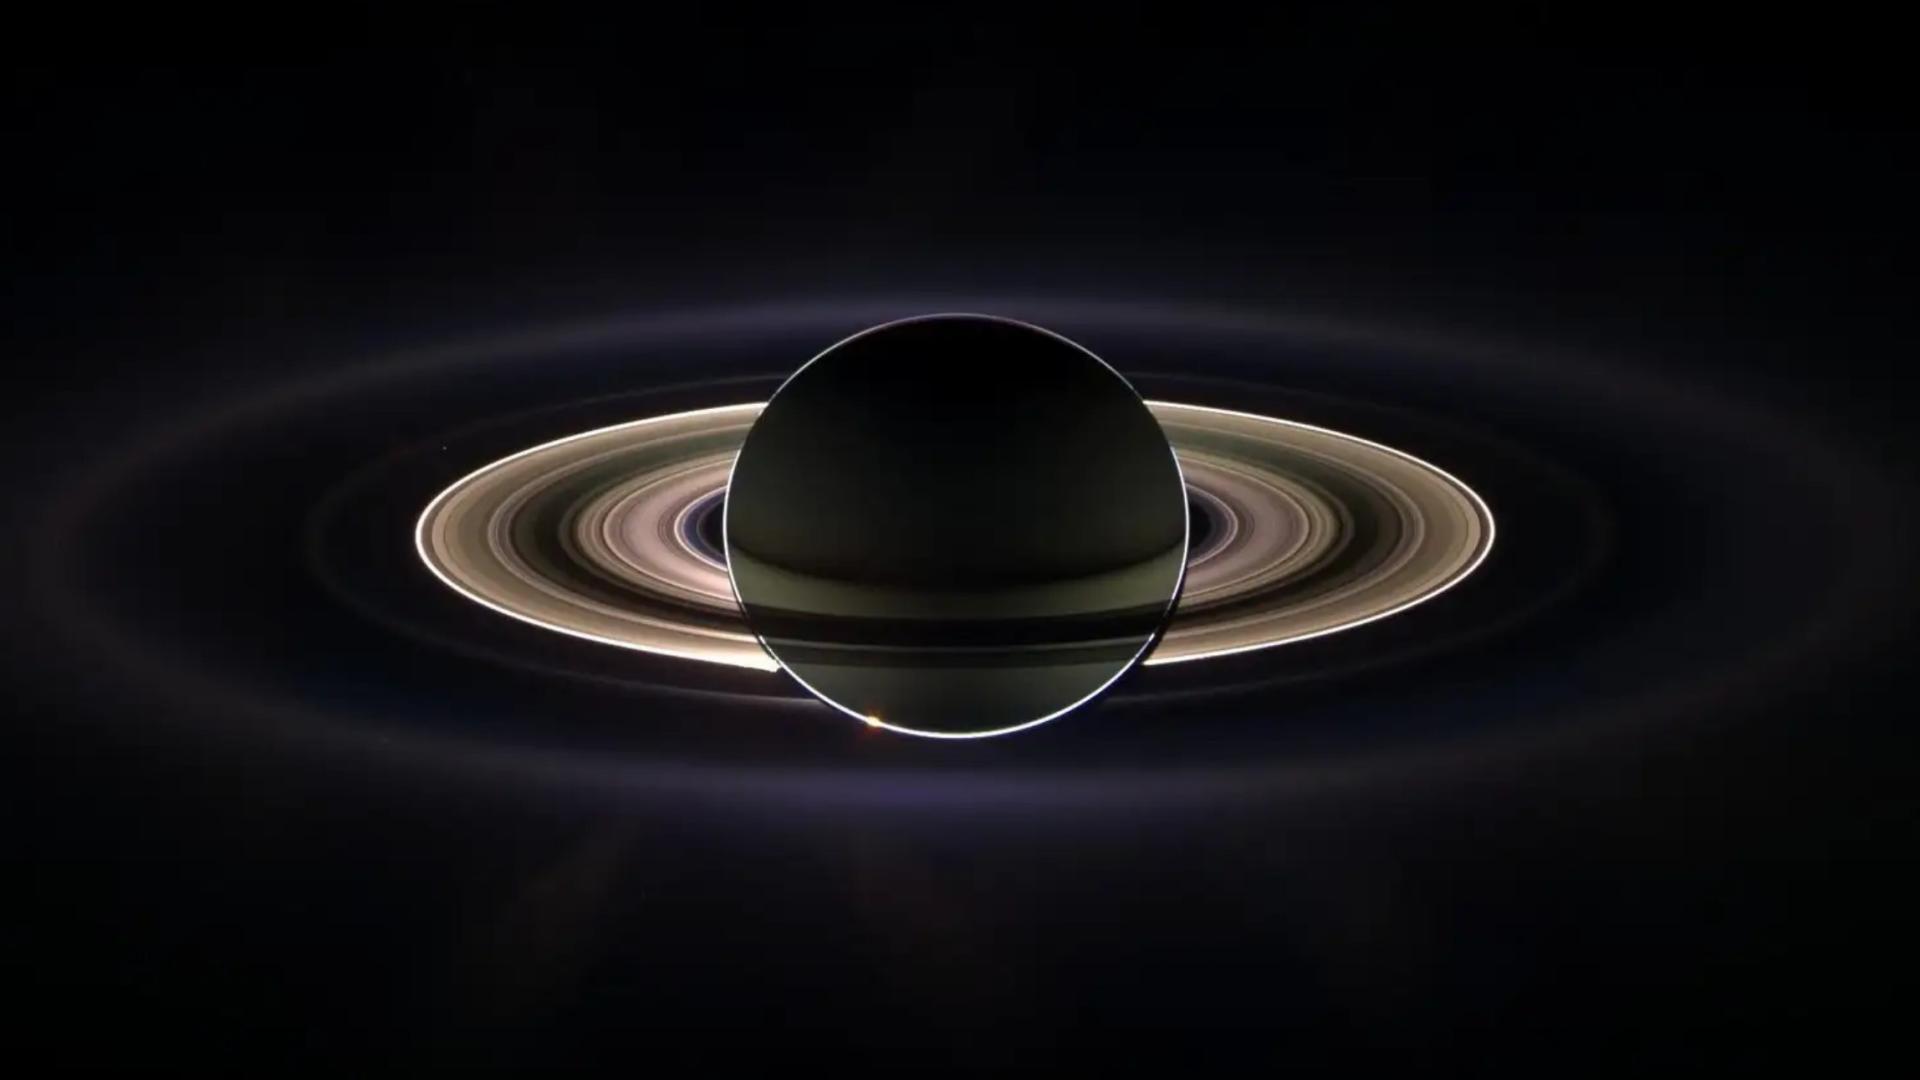  土星环上的涟漪告诉我们：土星的内核巨大且松散